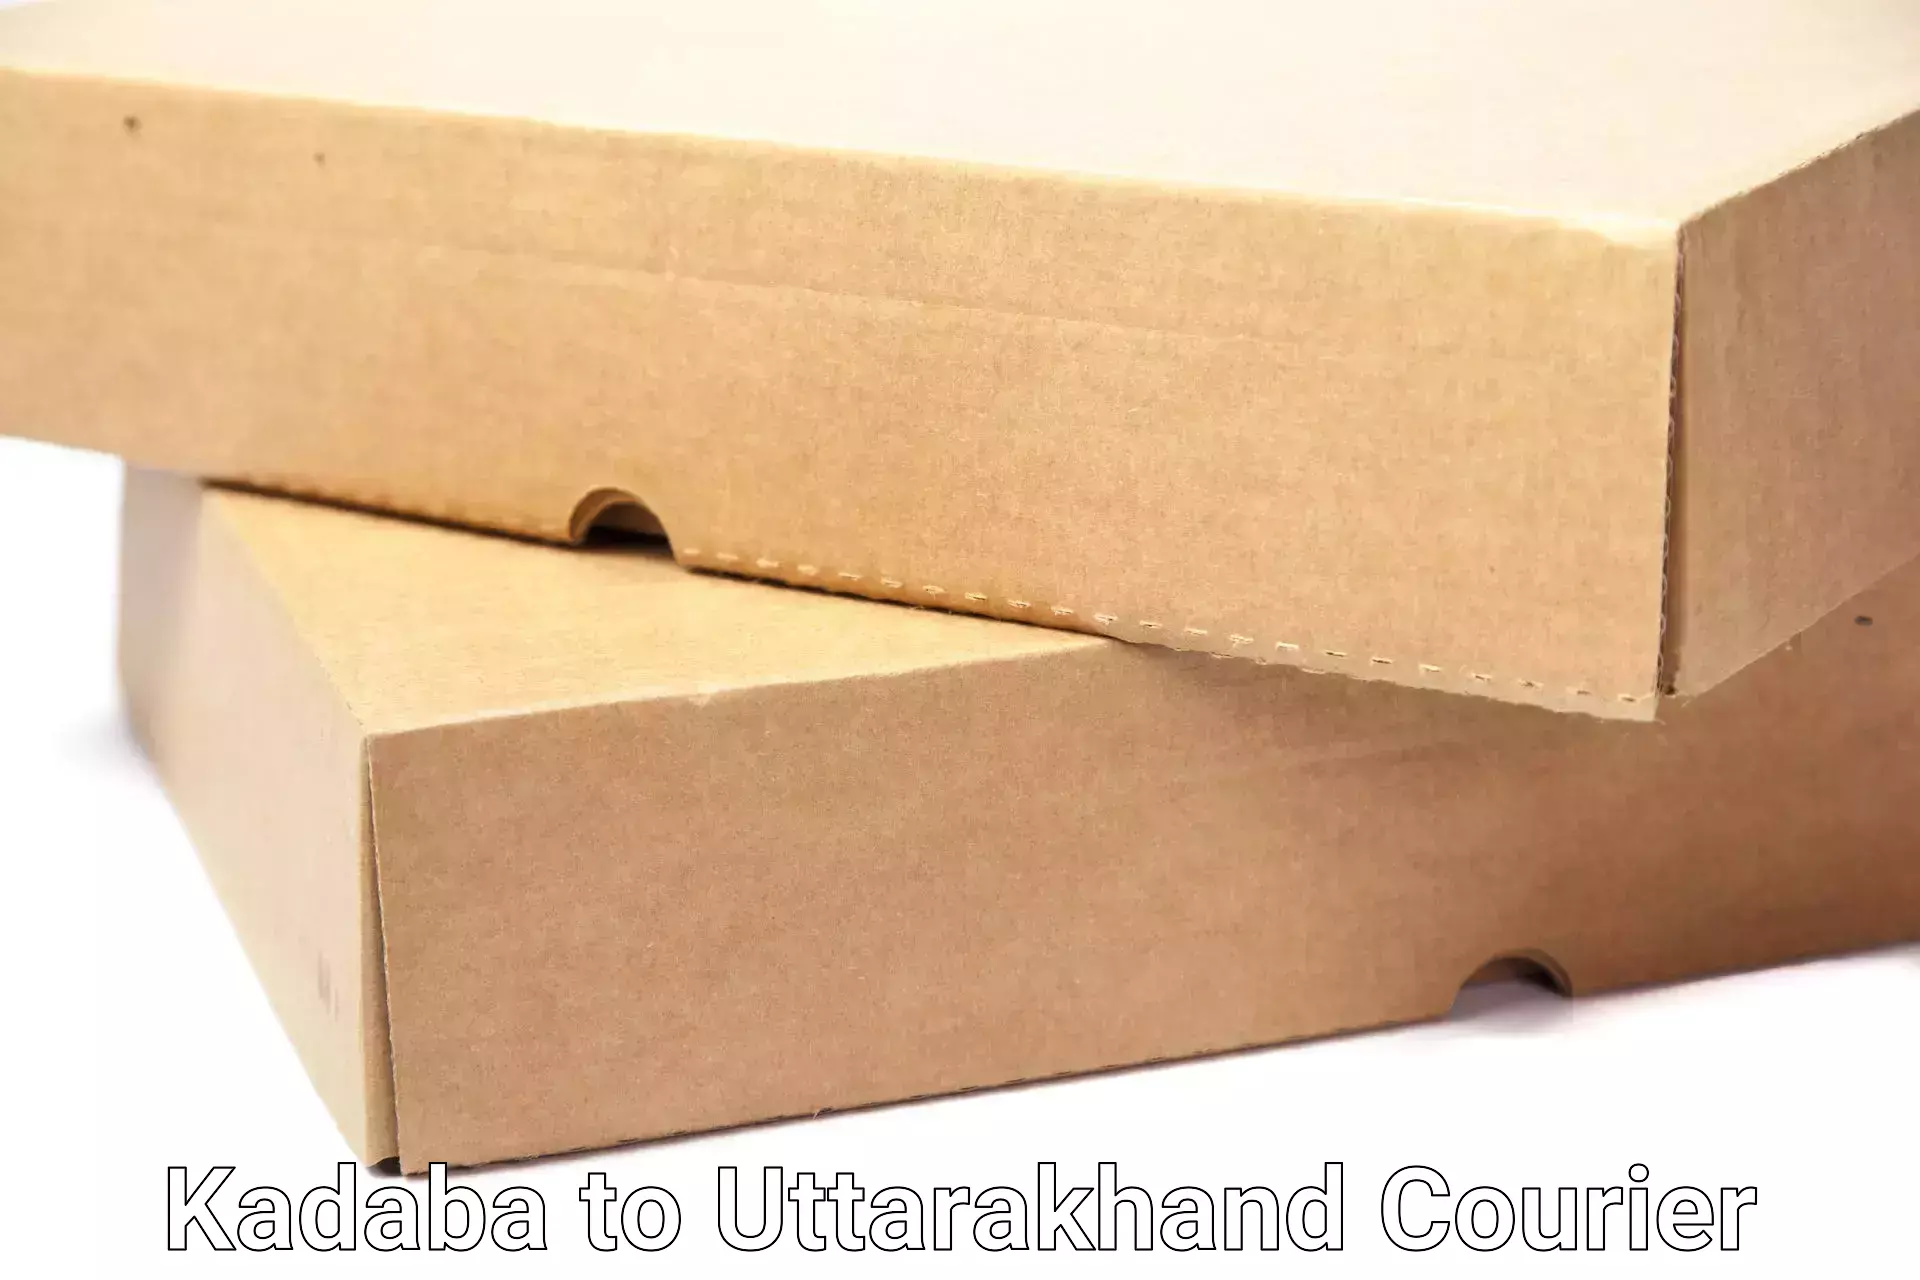 Furniture moving assistance Kadaba to Uttarakhand